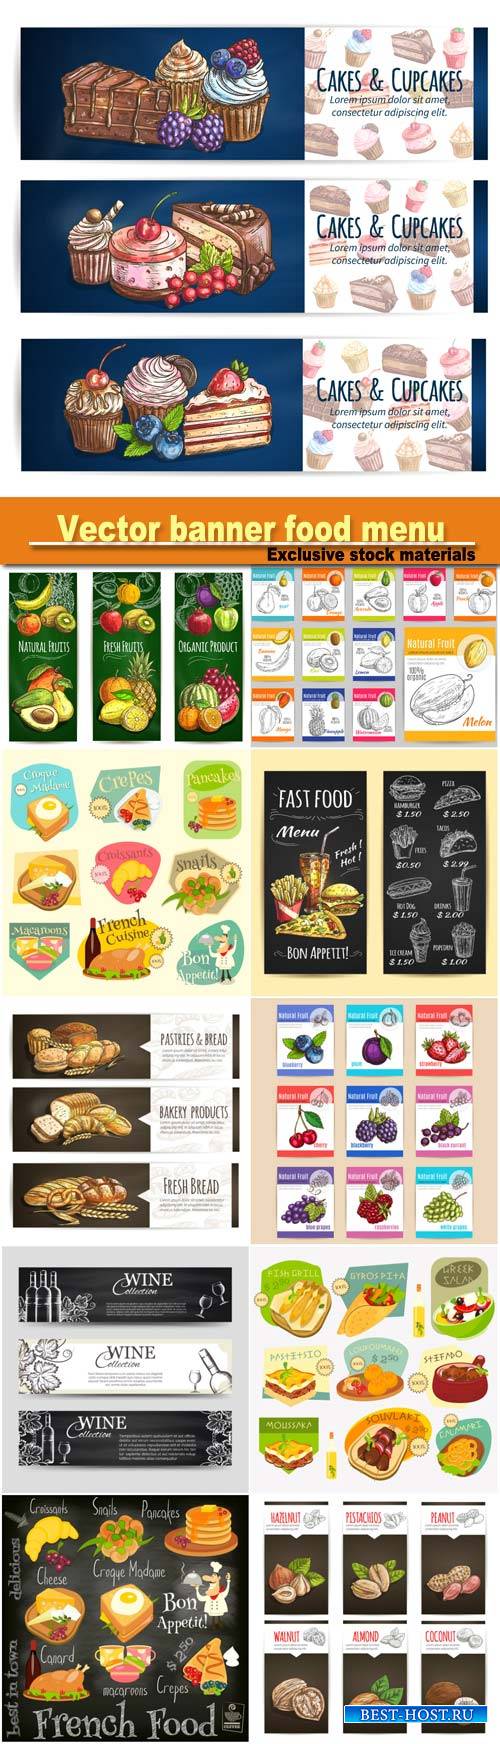 Vector banner food menu, cafe leaflet, pastry shop signboard